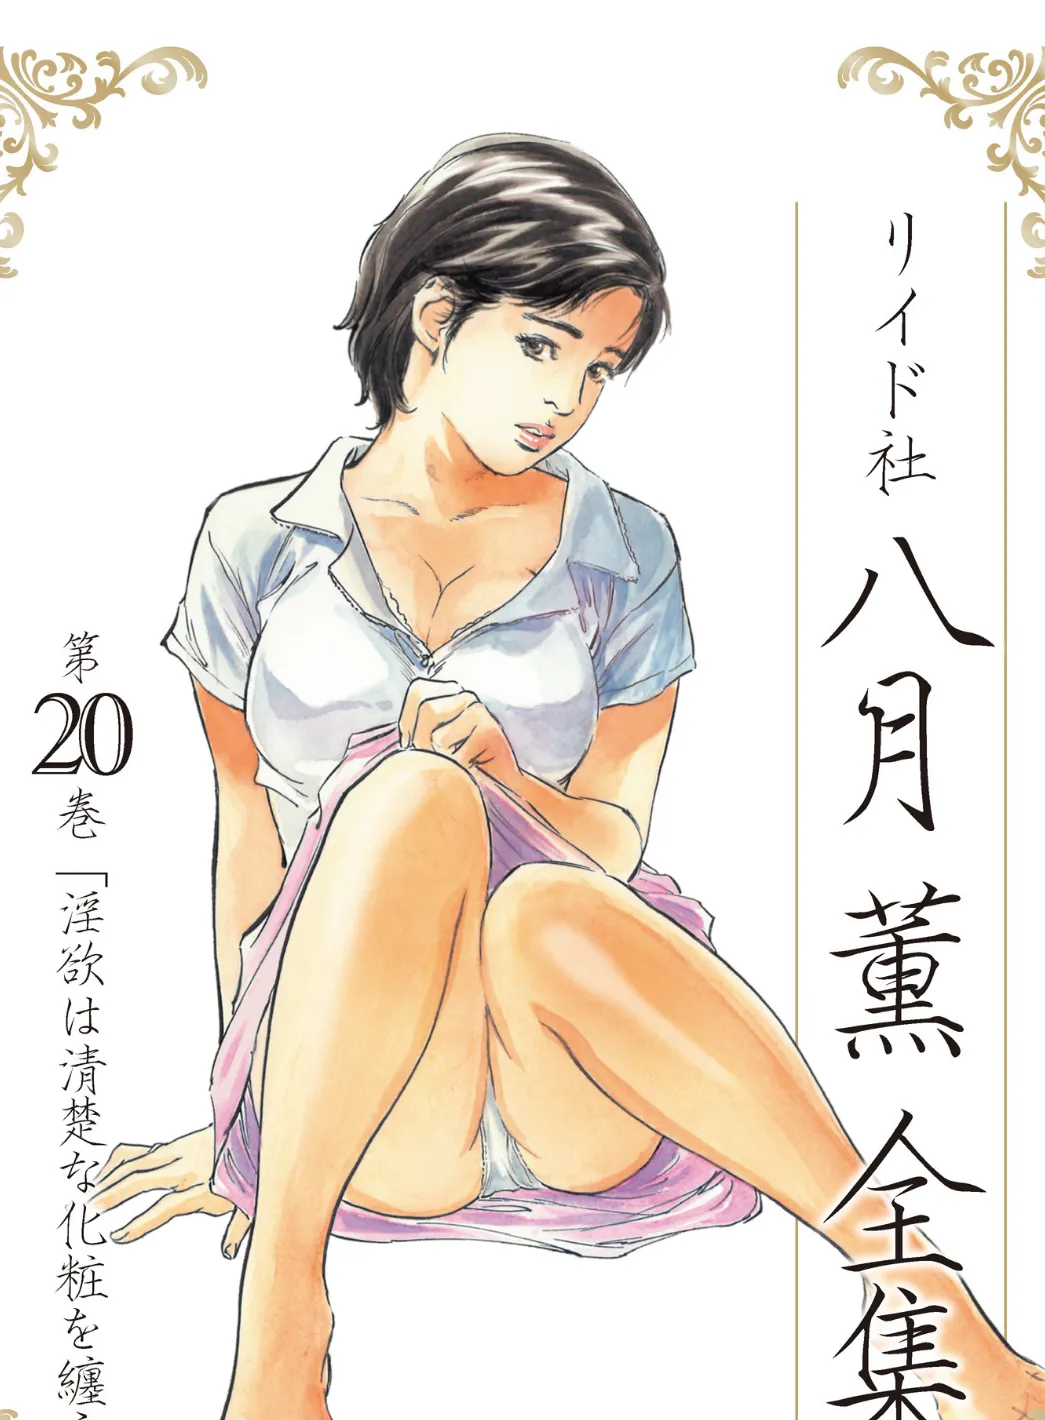 八月薫全集 第20巻 淫欲は清楚な化粧を纏う